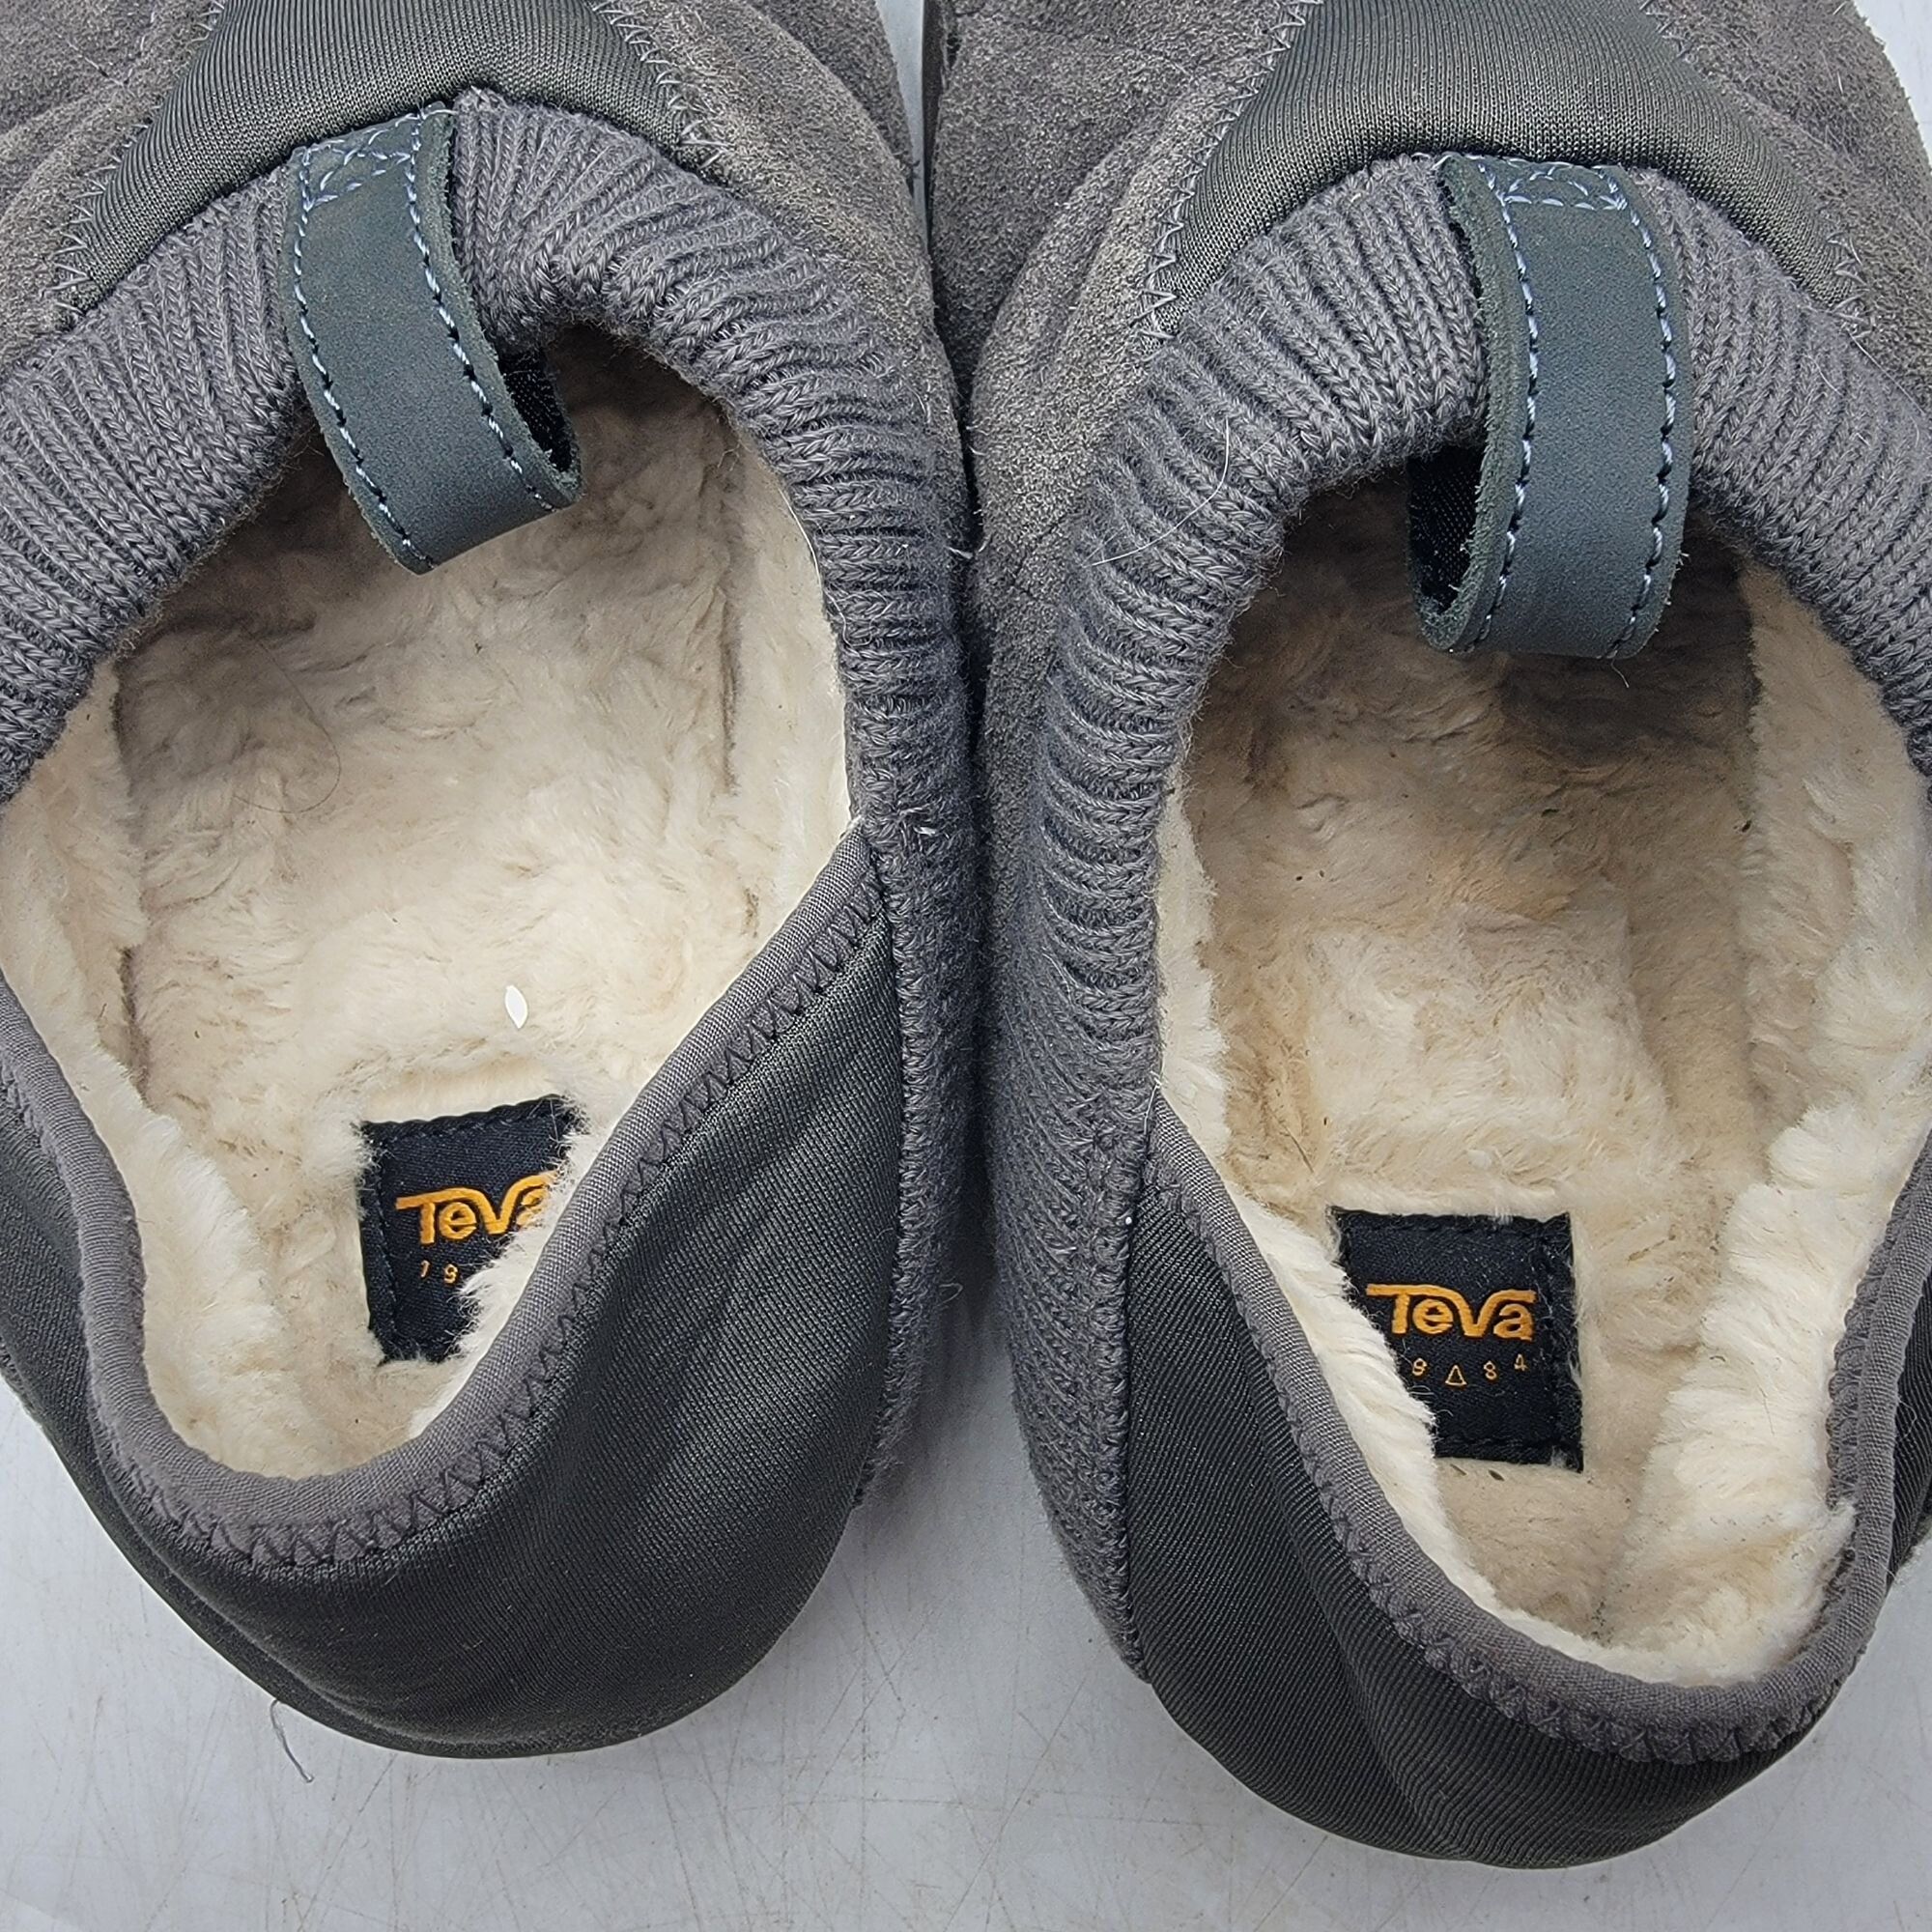 Teva Teva ReEmber Plushed Mens 11 Gray Slipper Shoes Comfort Line Size US 11 / EU 44 - 9 Thumbnail